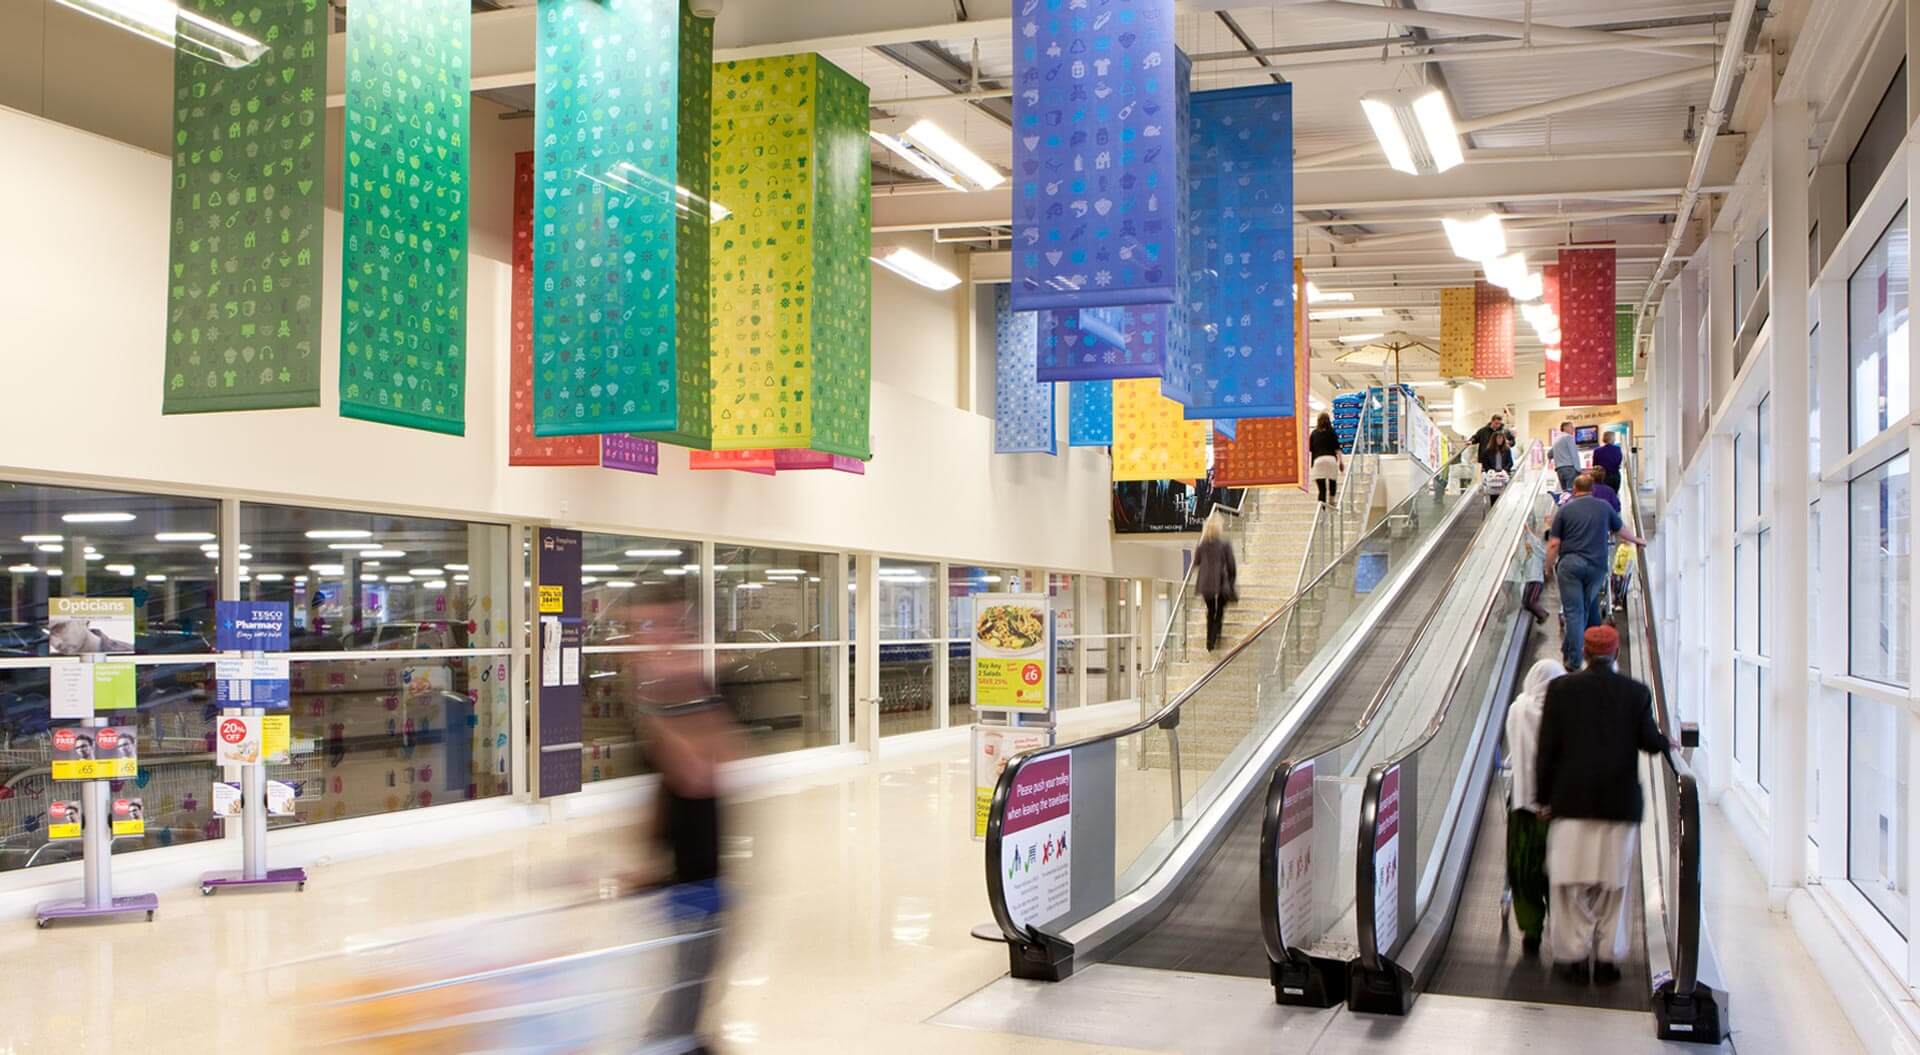 Tesco hypermarket escalator entrance branding